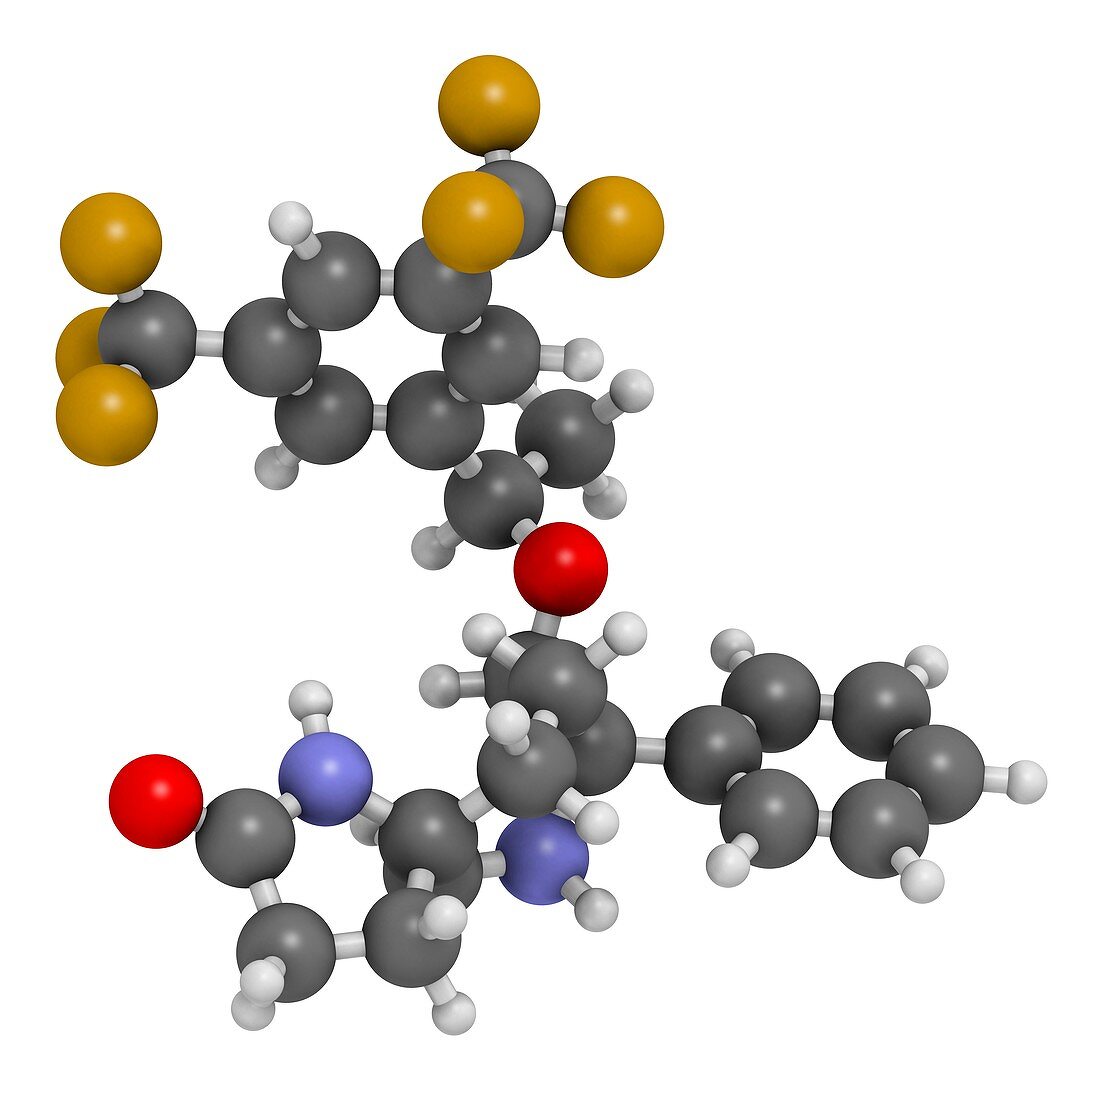 Rolapitant antiemetic drug molecule